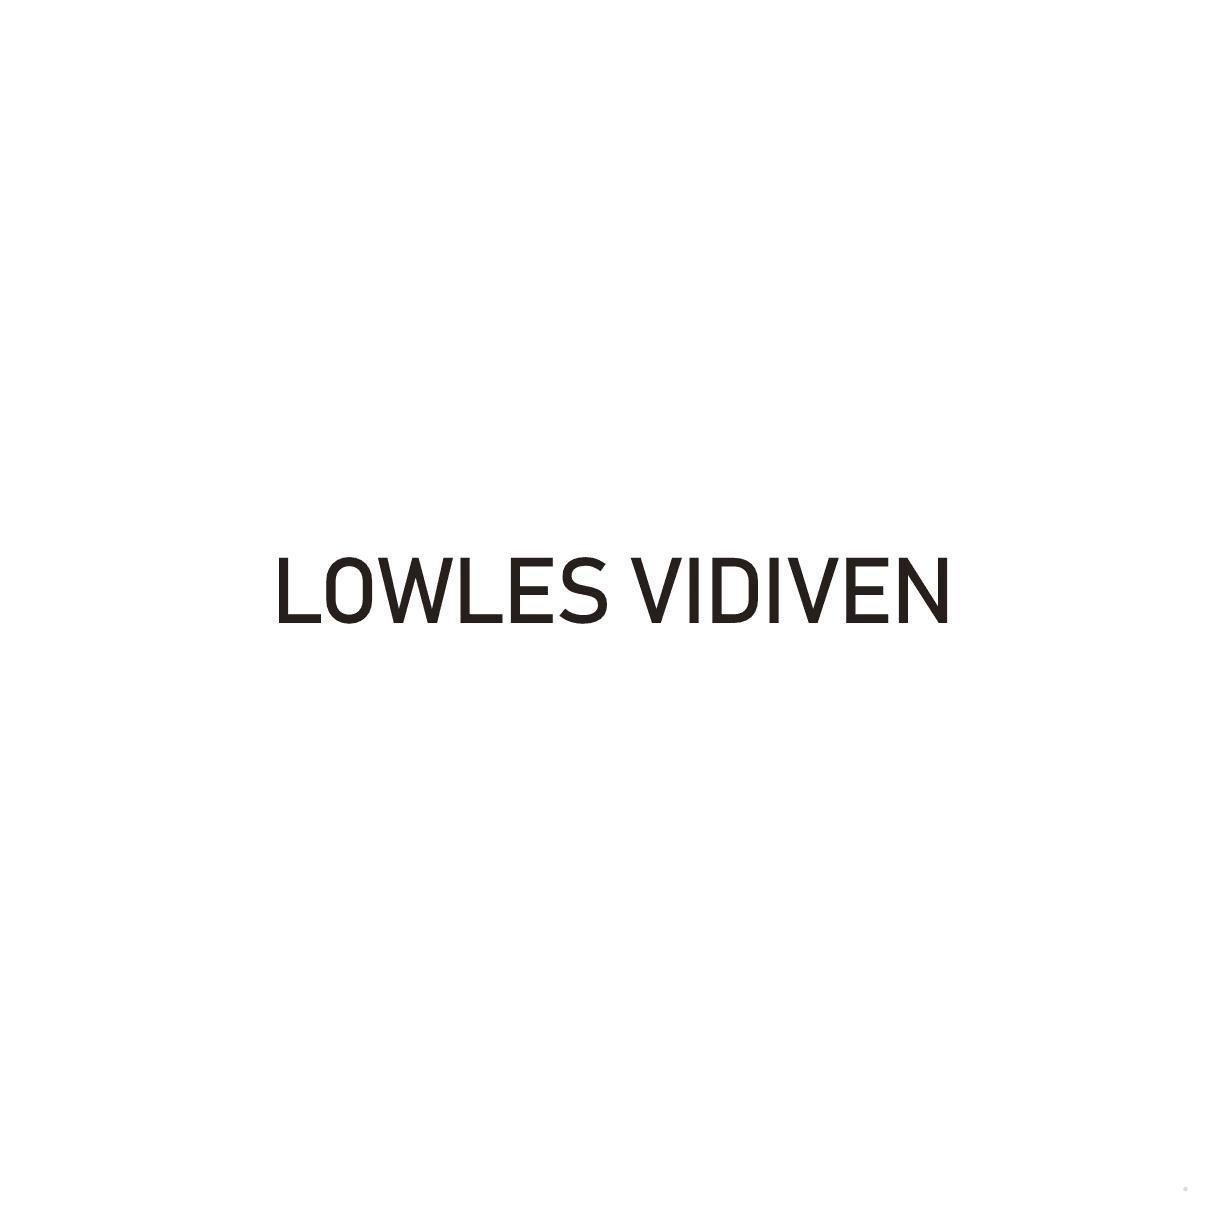 LOWLES VIDIVEN